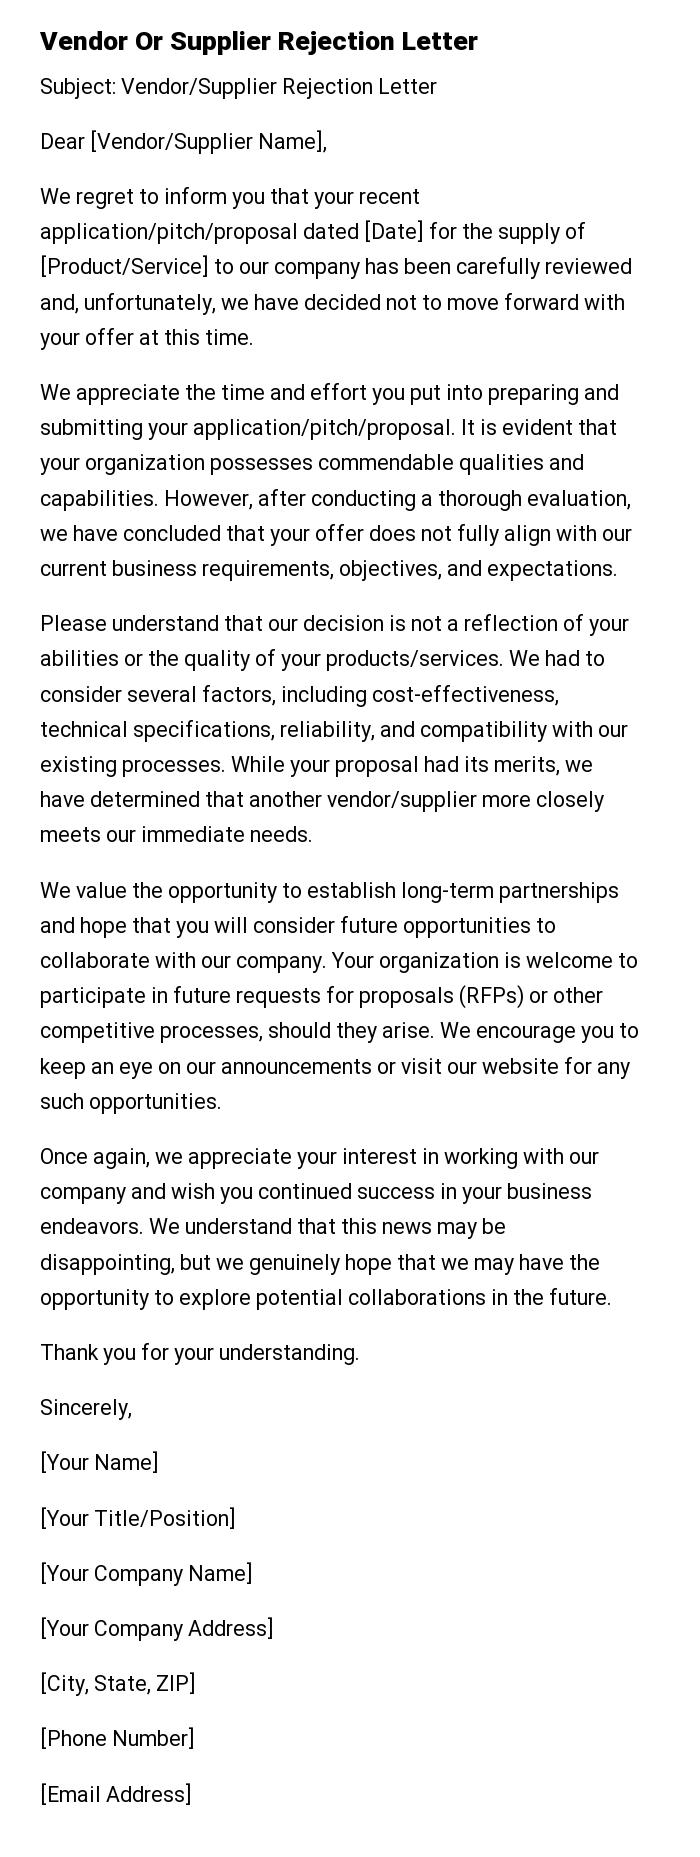 Vendor Or Supplier Rejection Letter